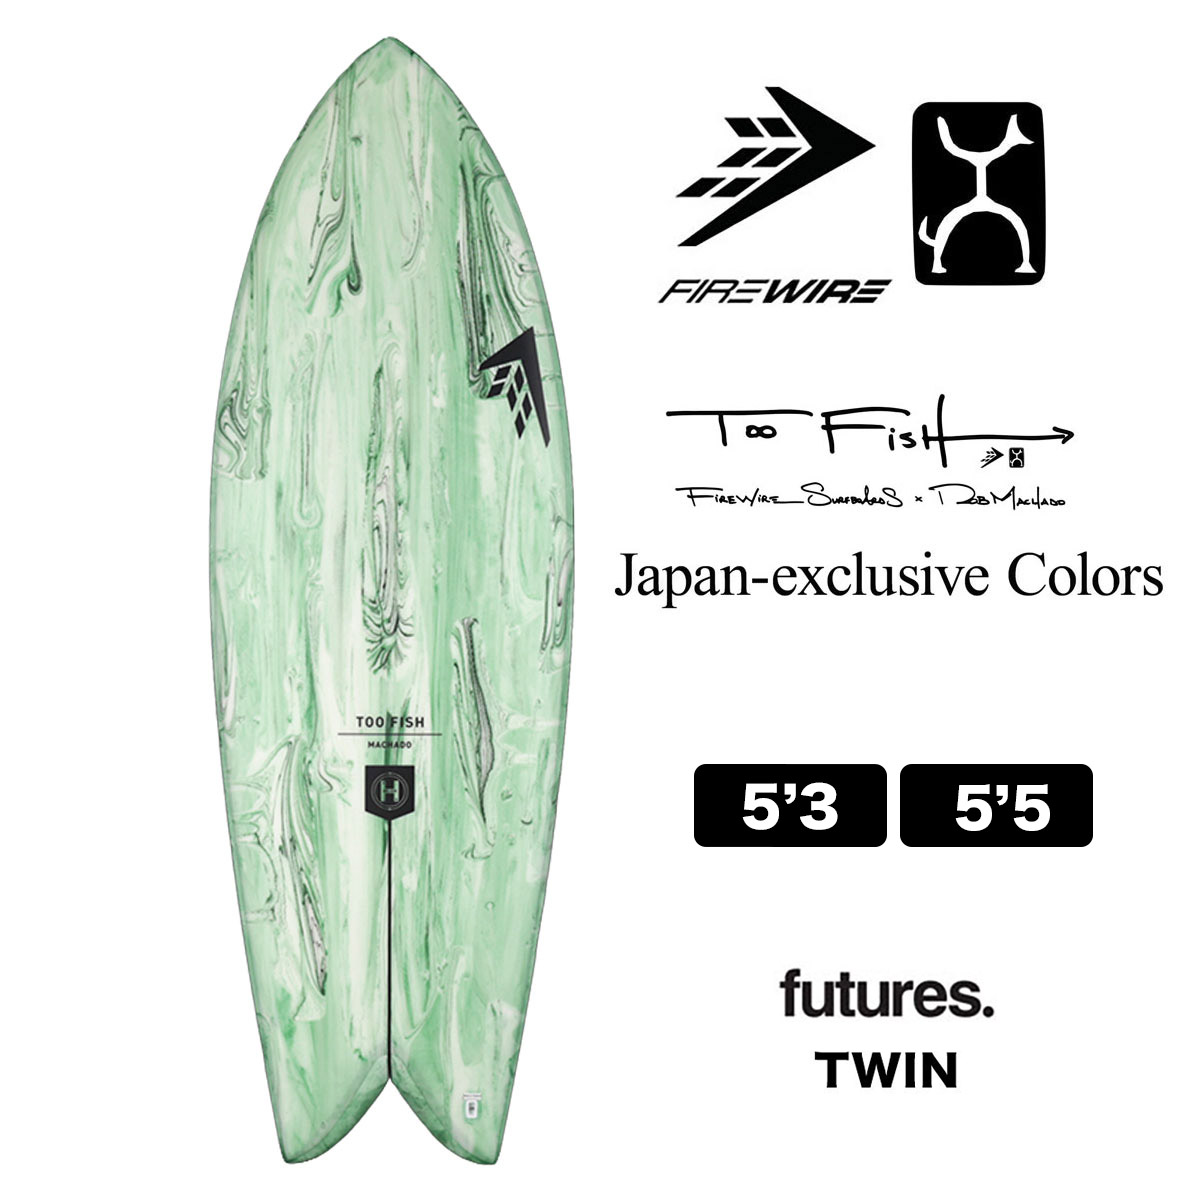 ファイヤーワイヤー サーフボード トゥーフィッシュ FIREWIRE Too Fish japan exclusive Color Green 5.3  ロブマチャド ツインフィン futures サーフィン 正規取扱店 グリーン 5'3 【2024年入荷】-ジャックオーシャンスポーツ